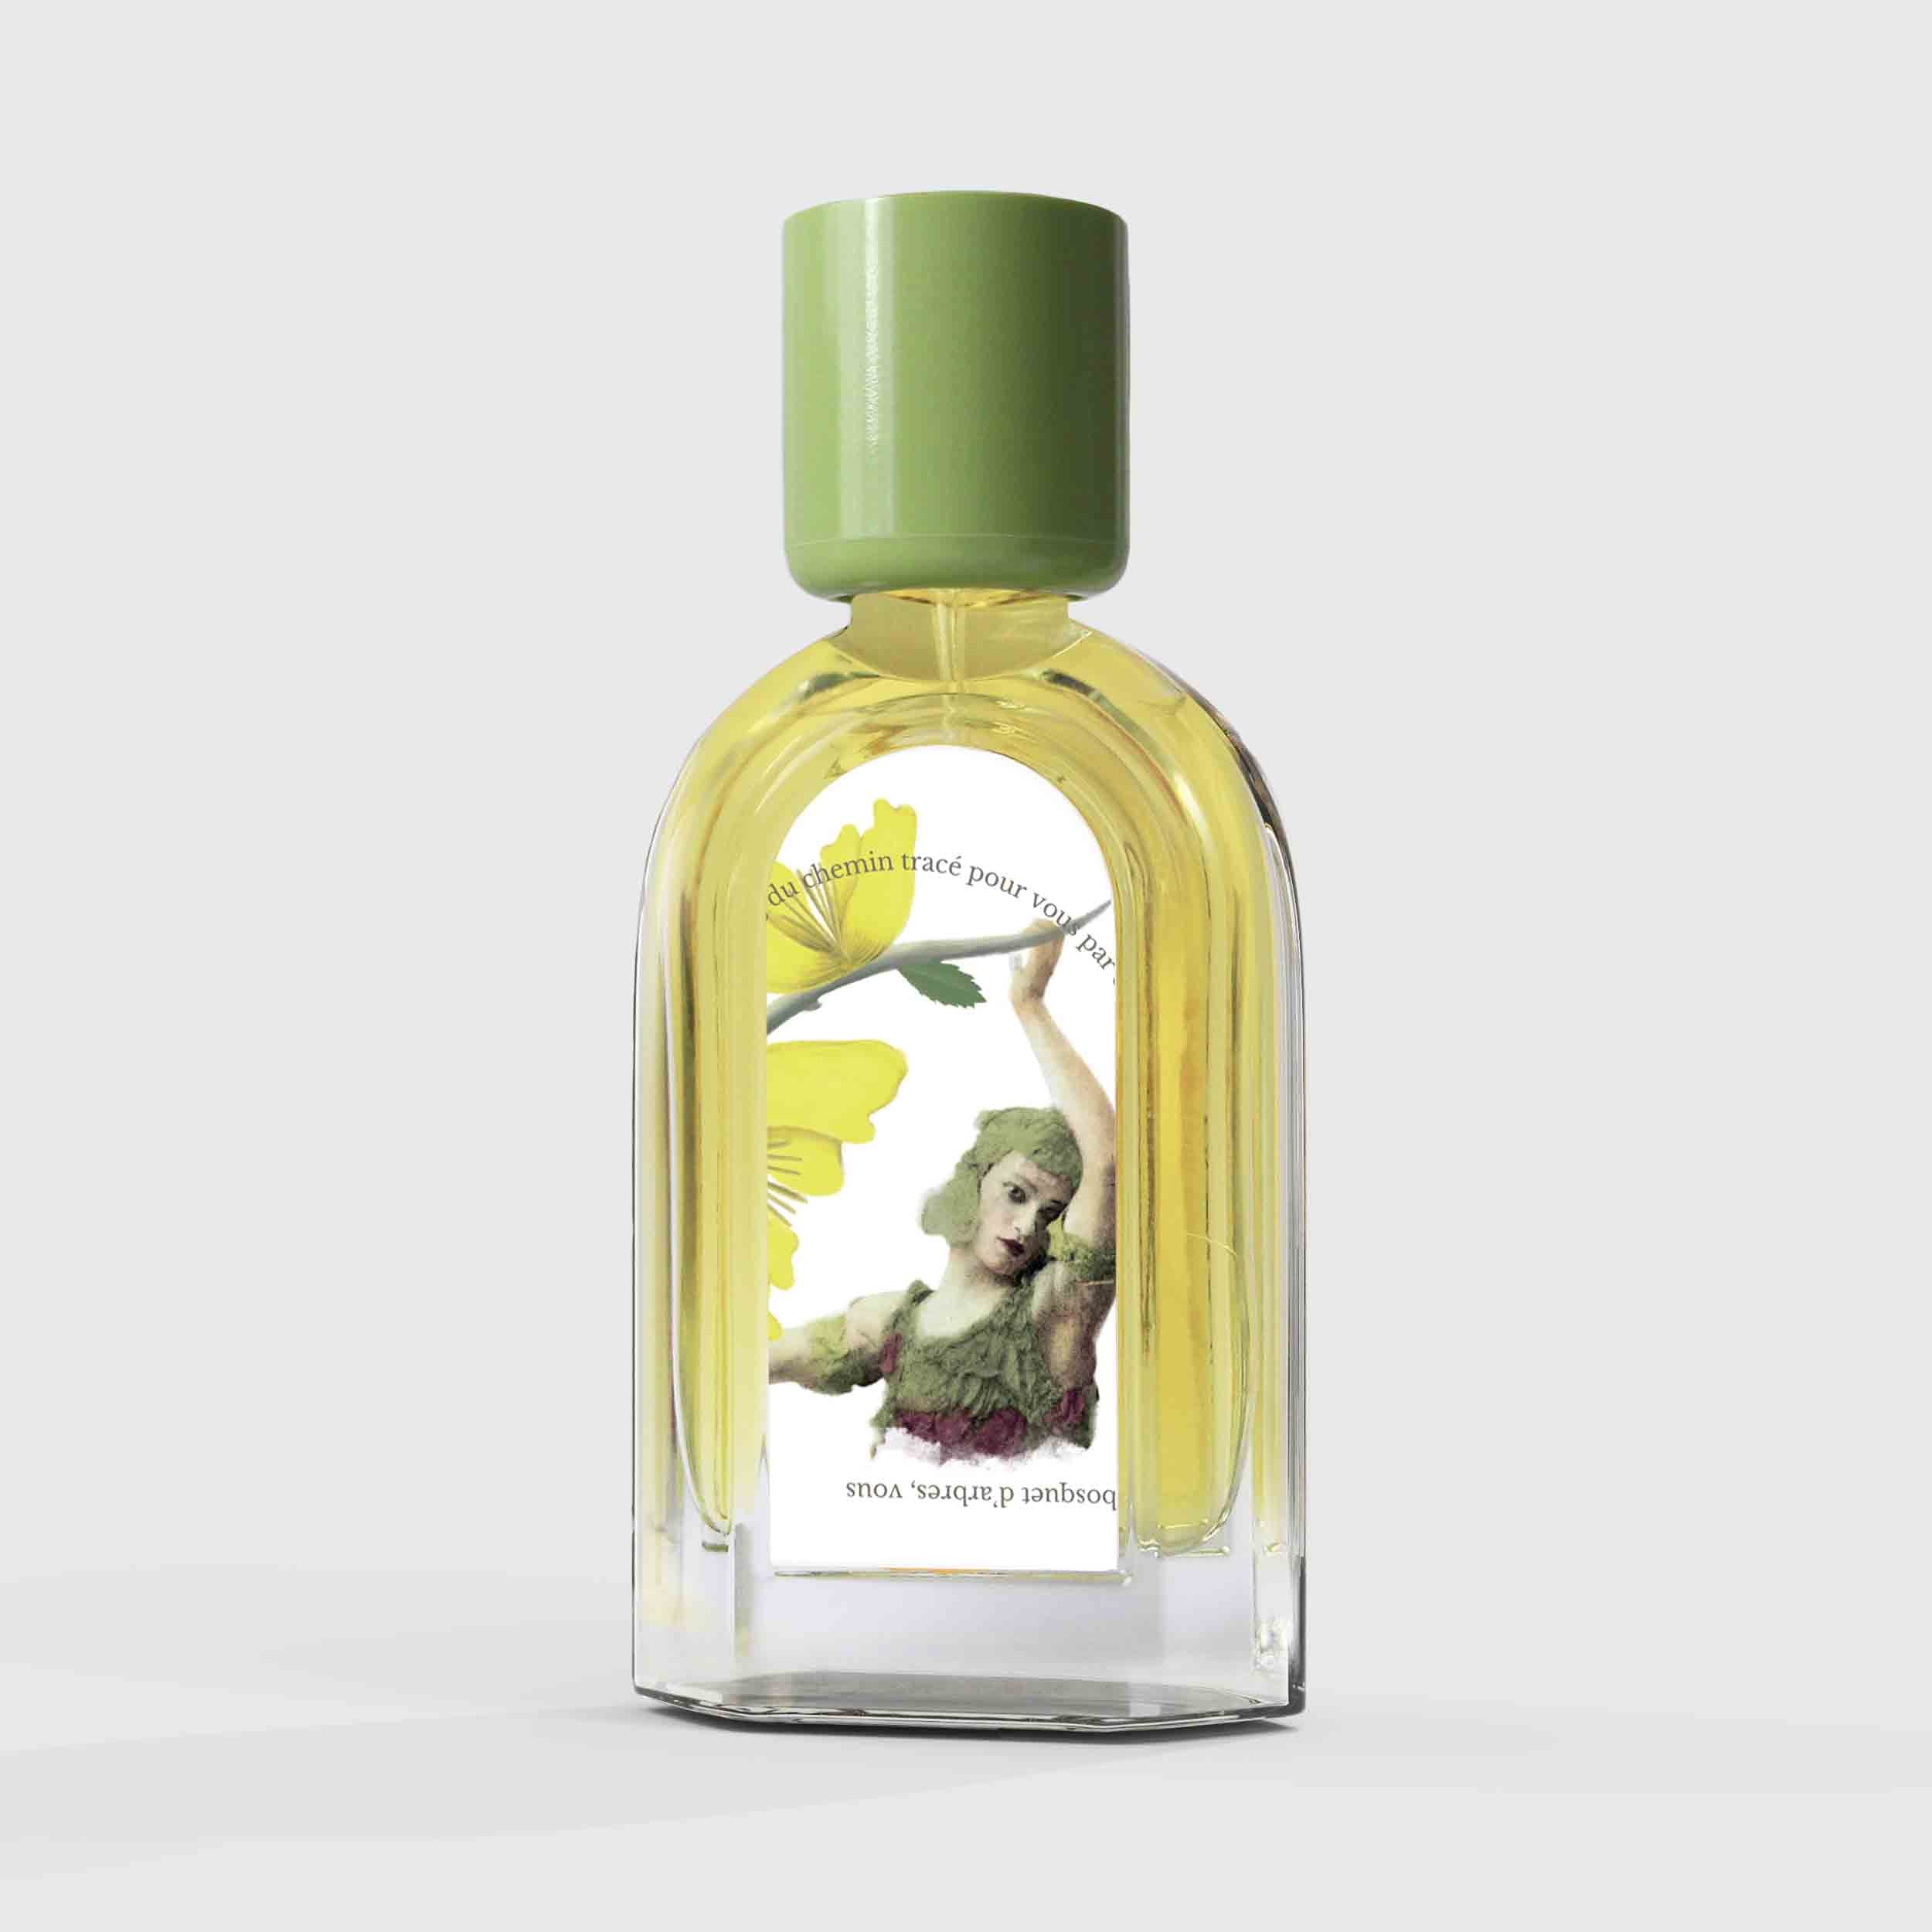 Bois Tabac Virginia Eau de Parfum 50ml Bottle by Le Jardin Retrouvé